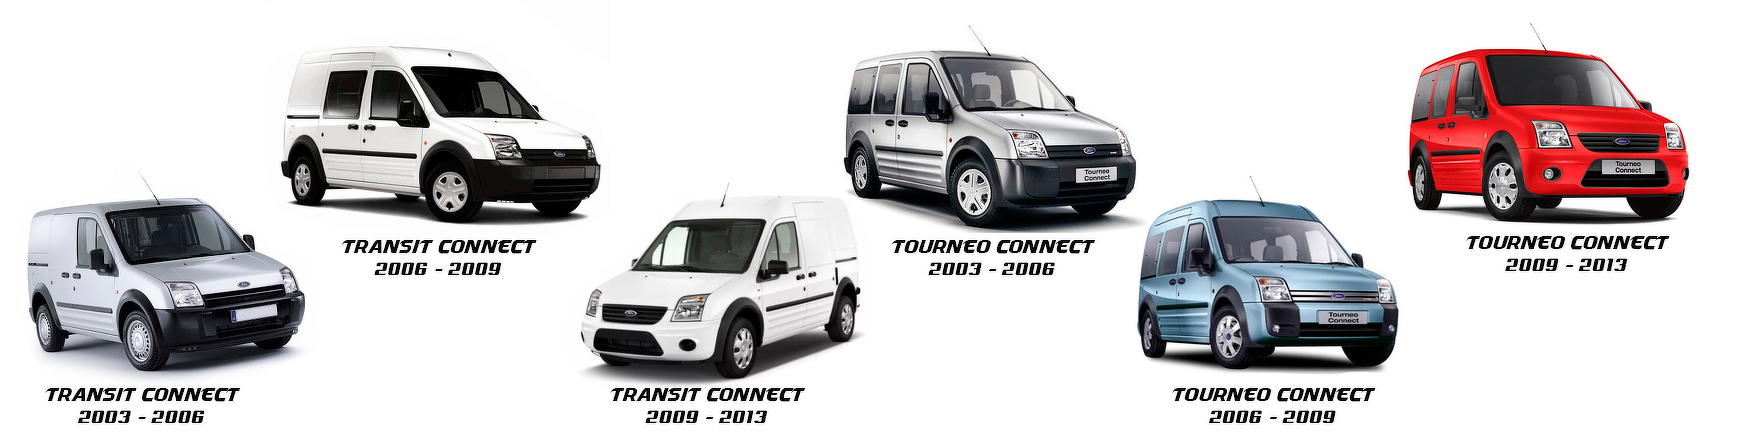 Recambios de Ford Tourneo Connect de 2009, 2010, 2011, 2012 y 2013.